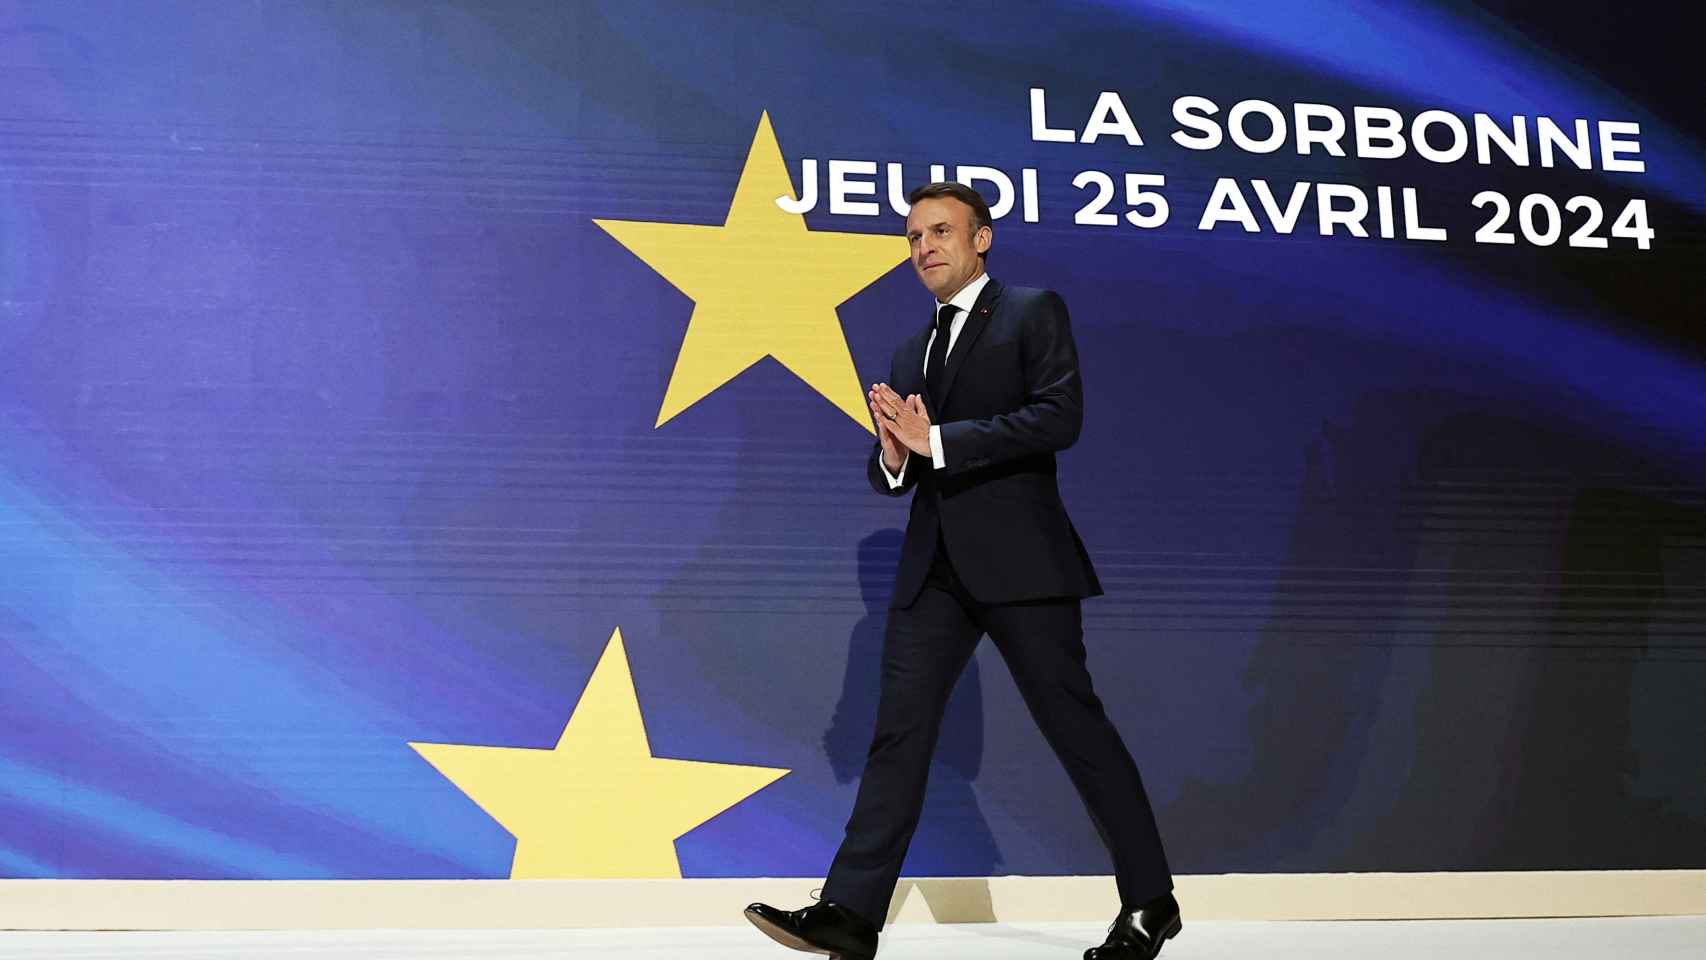 El presidente francés, Emmanuel Macron, ha pronunciado este jueves un discurso sobre Europa en la Sorbona